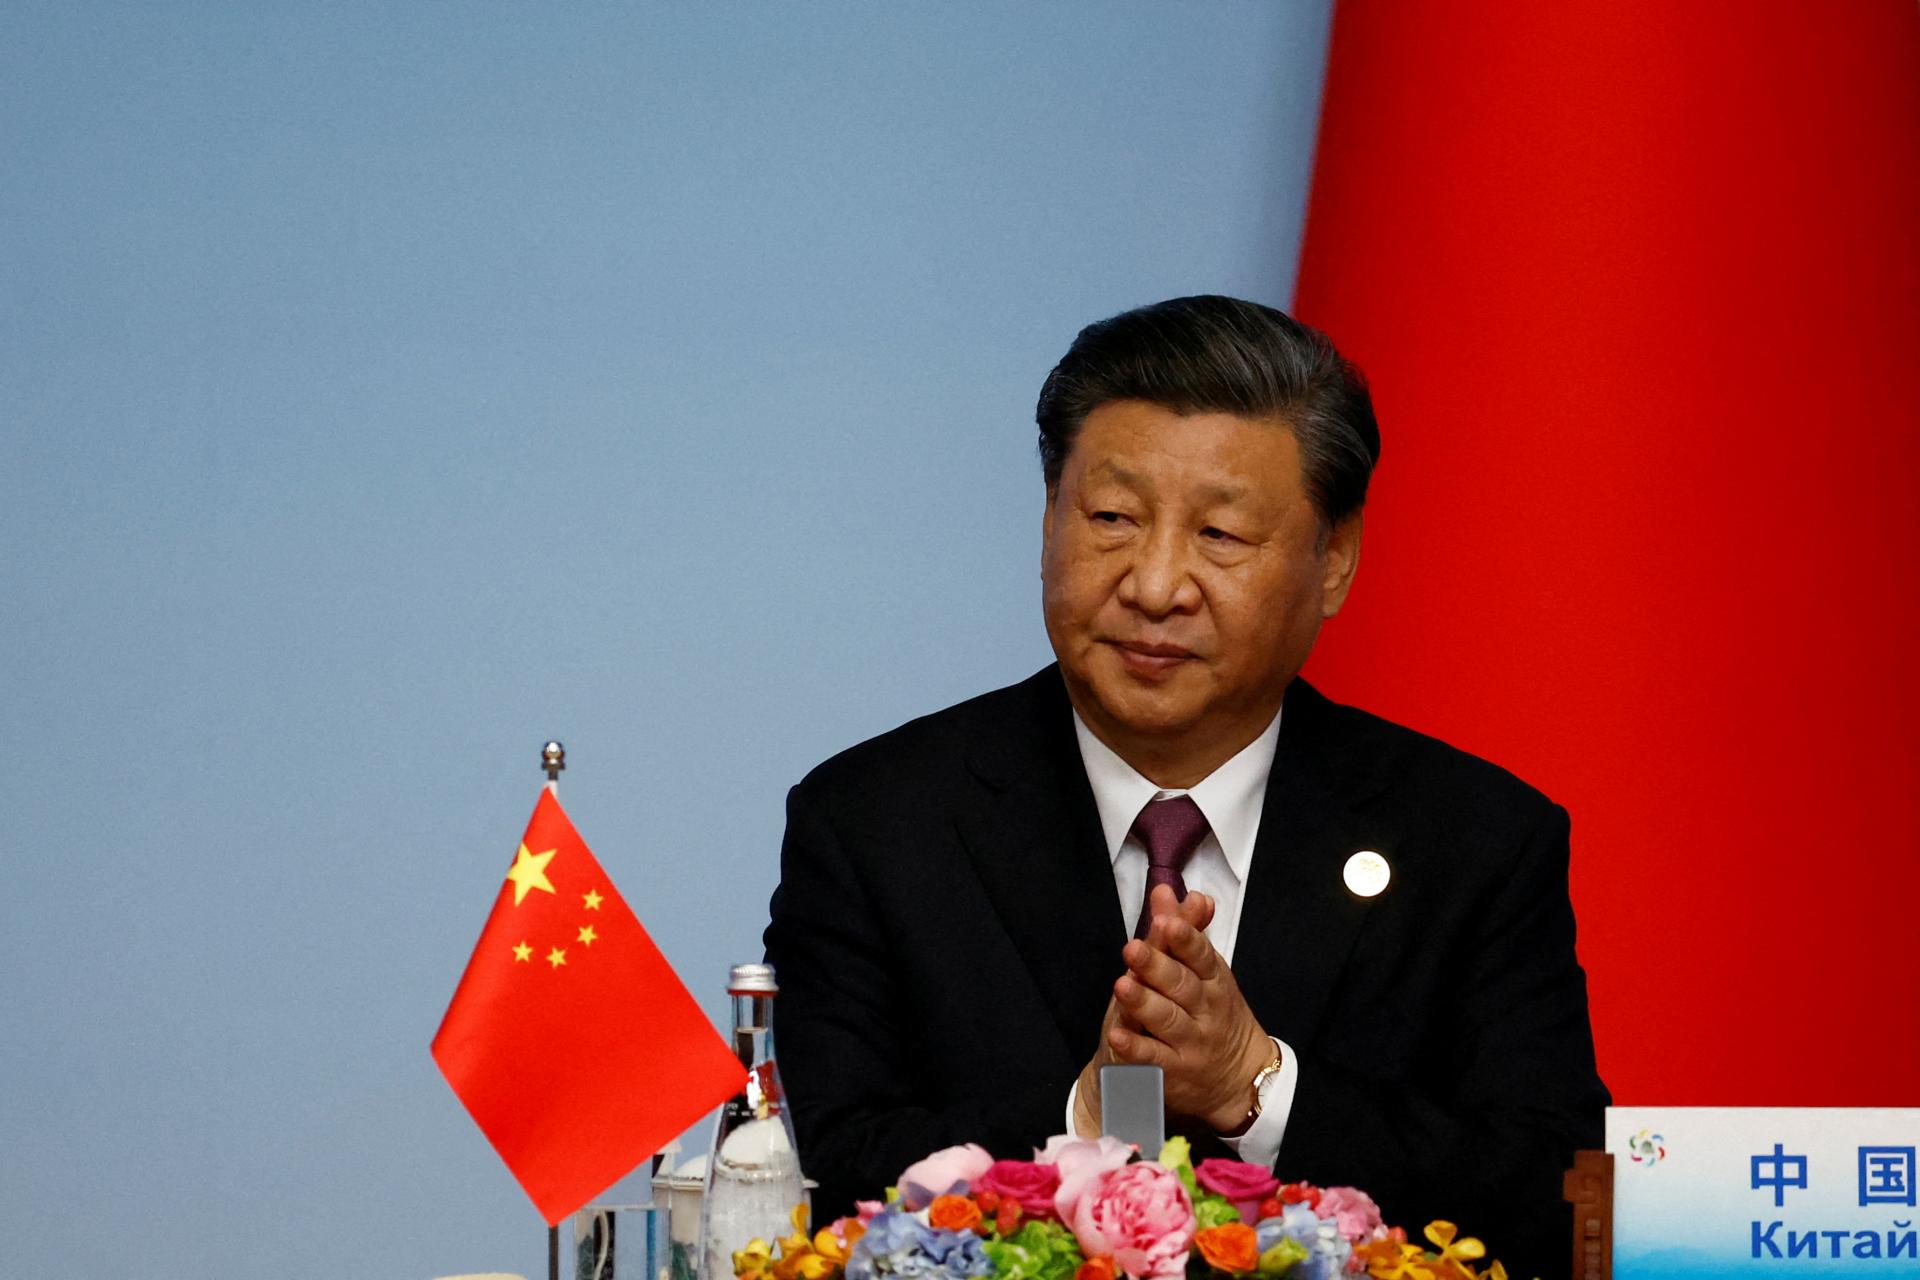 Čínsky prezident bol na inšpekcii jednotiek blízko Taiwanu. Bráňte národnú suverenitu a bezpečnosť, odkázal